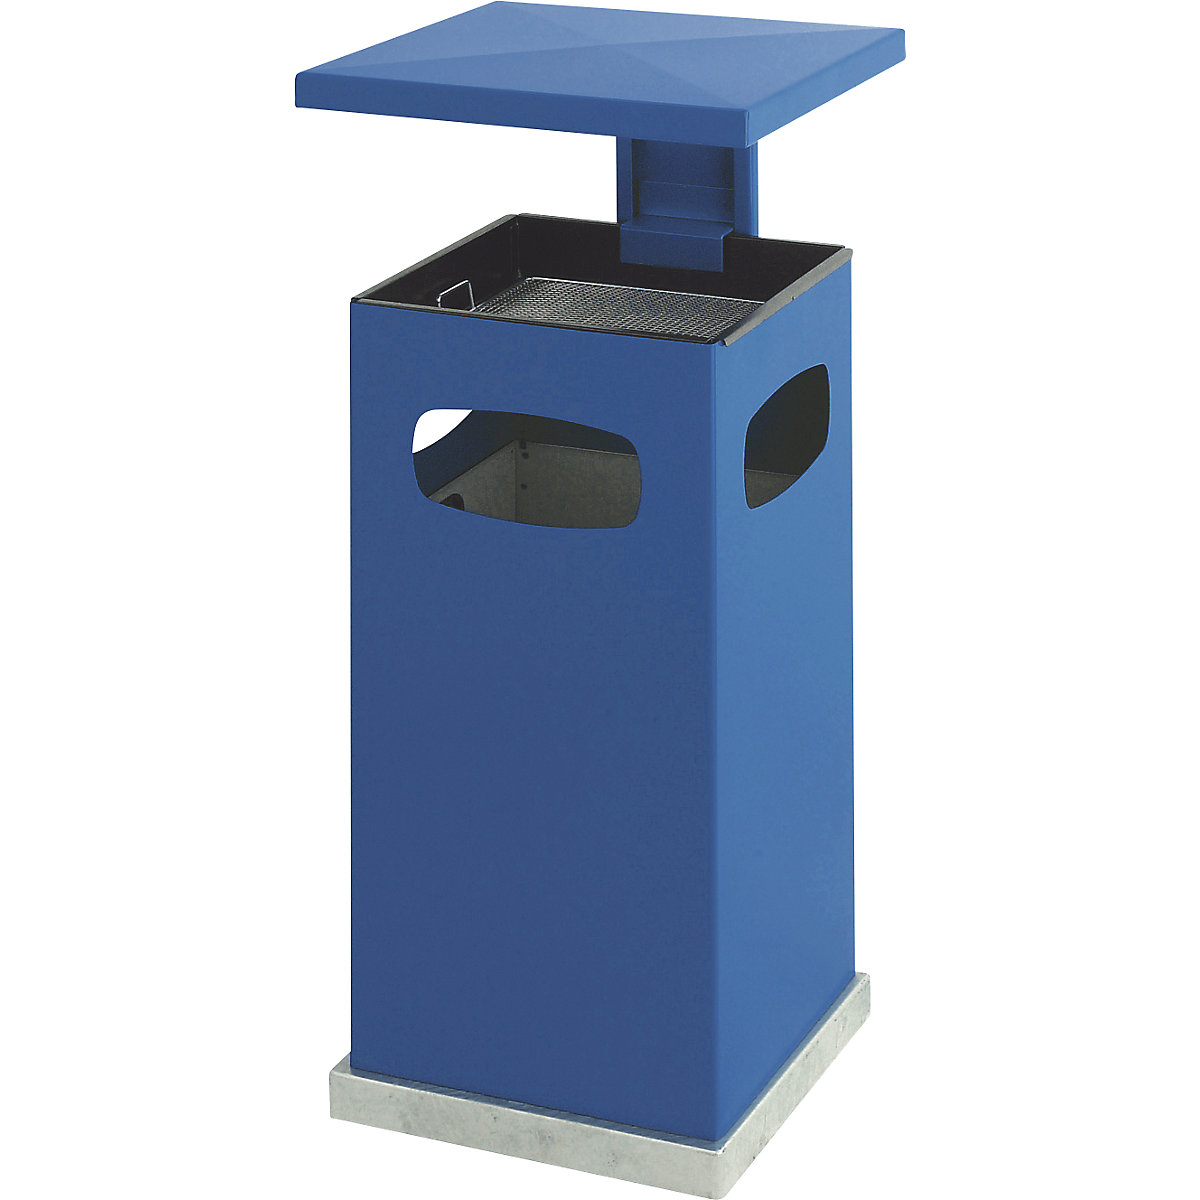 Collecteur de déchets avec cendrier et toit de protection, capacité 38 l, l x h x p 395 x 910 x 395 mm, bleu gentiane